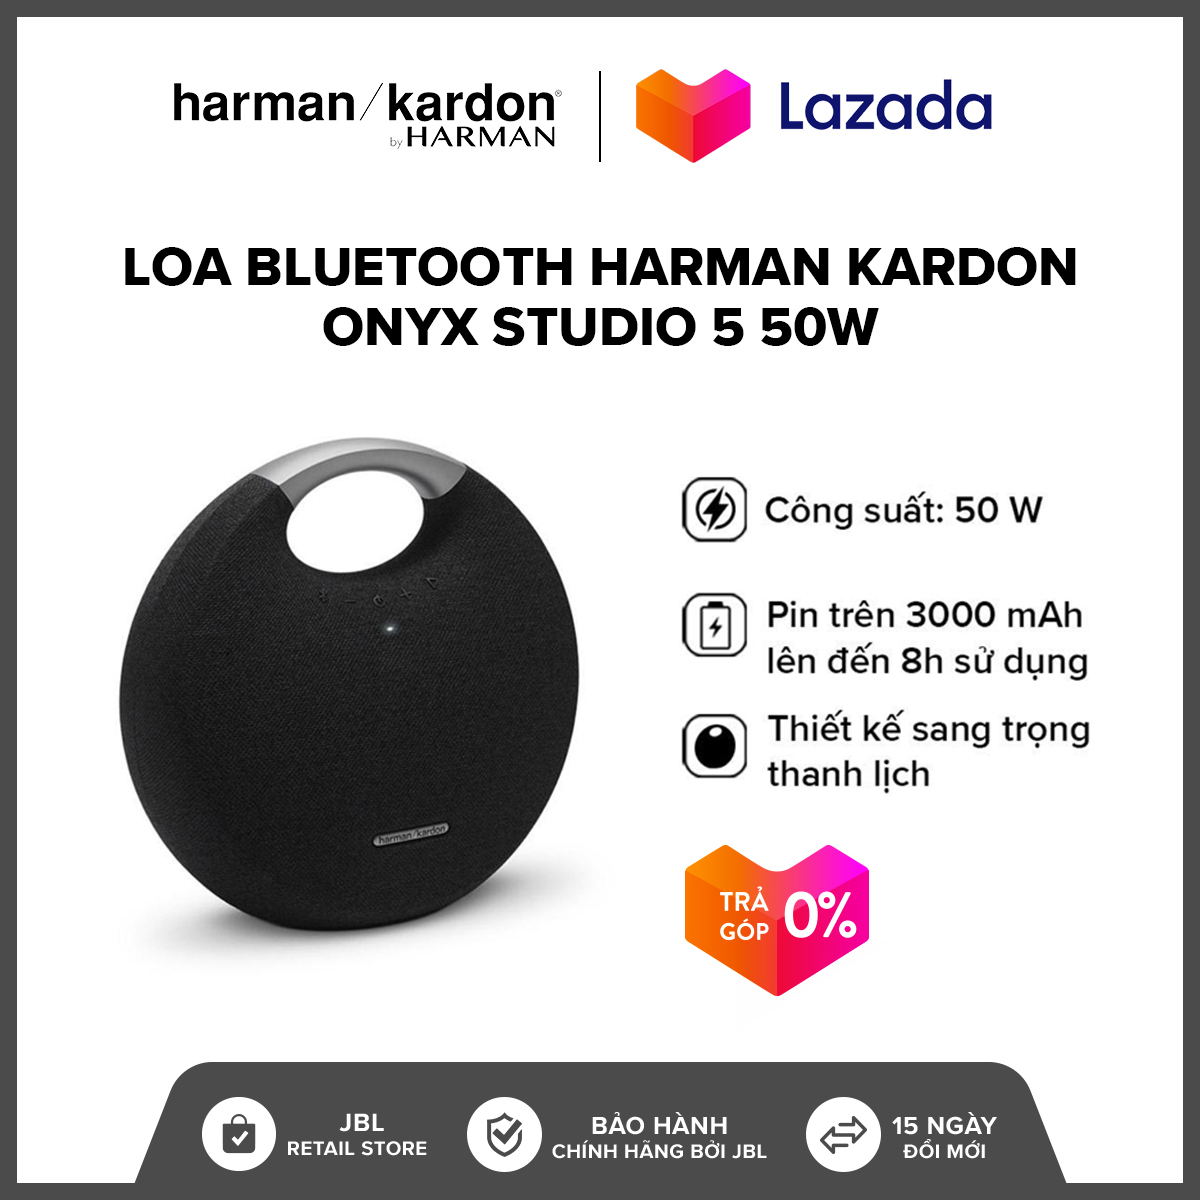 [VOUCHER 200K - TRẢ GÓP 0% - HÀNG CHÍNH HÃNG] Loa Bluetooth Harman Kardon Onyx Studio 5 50W l Âm...